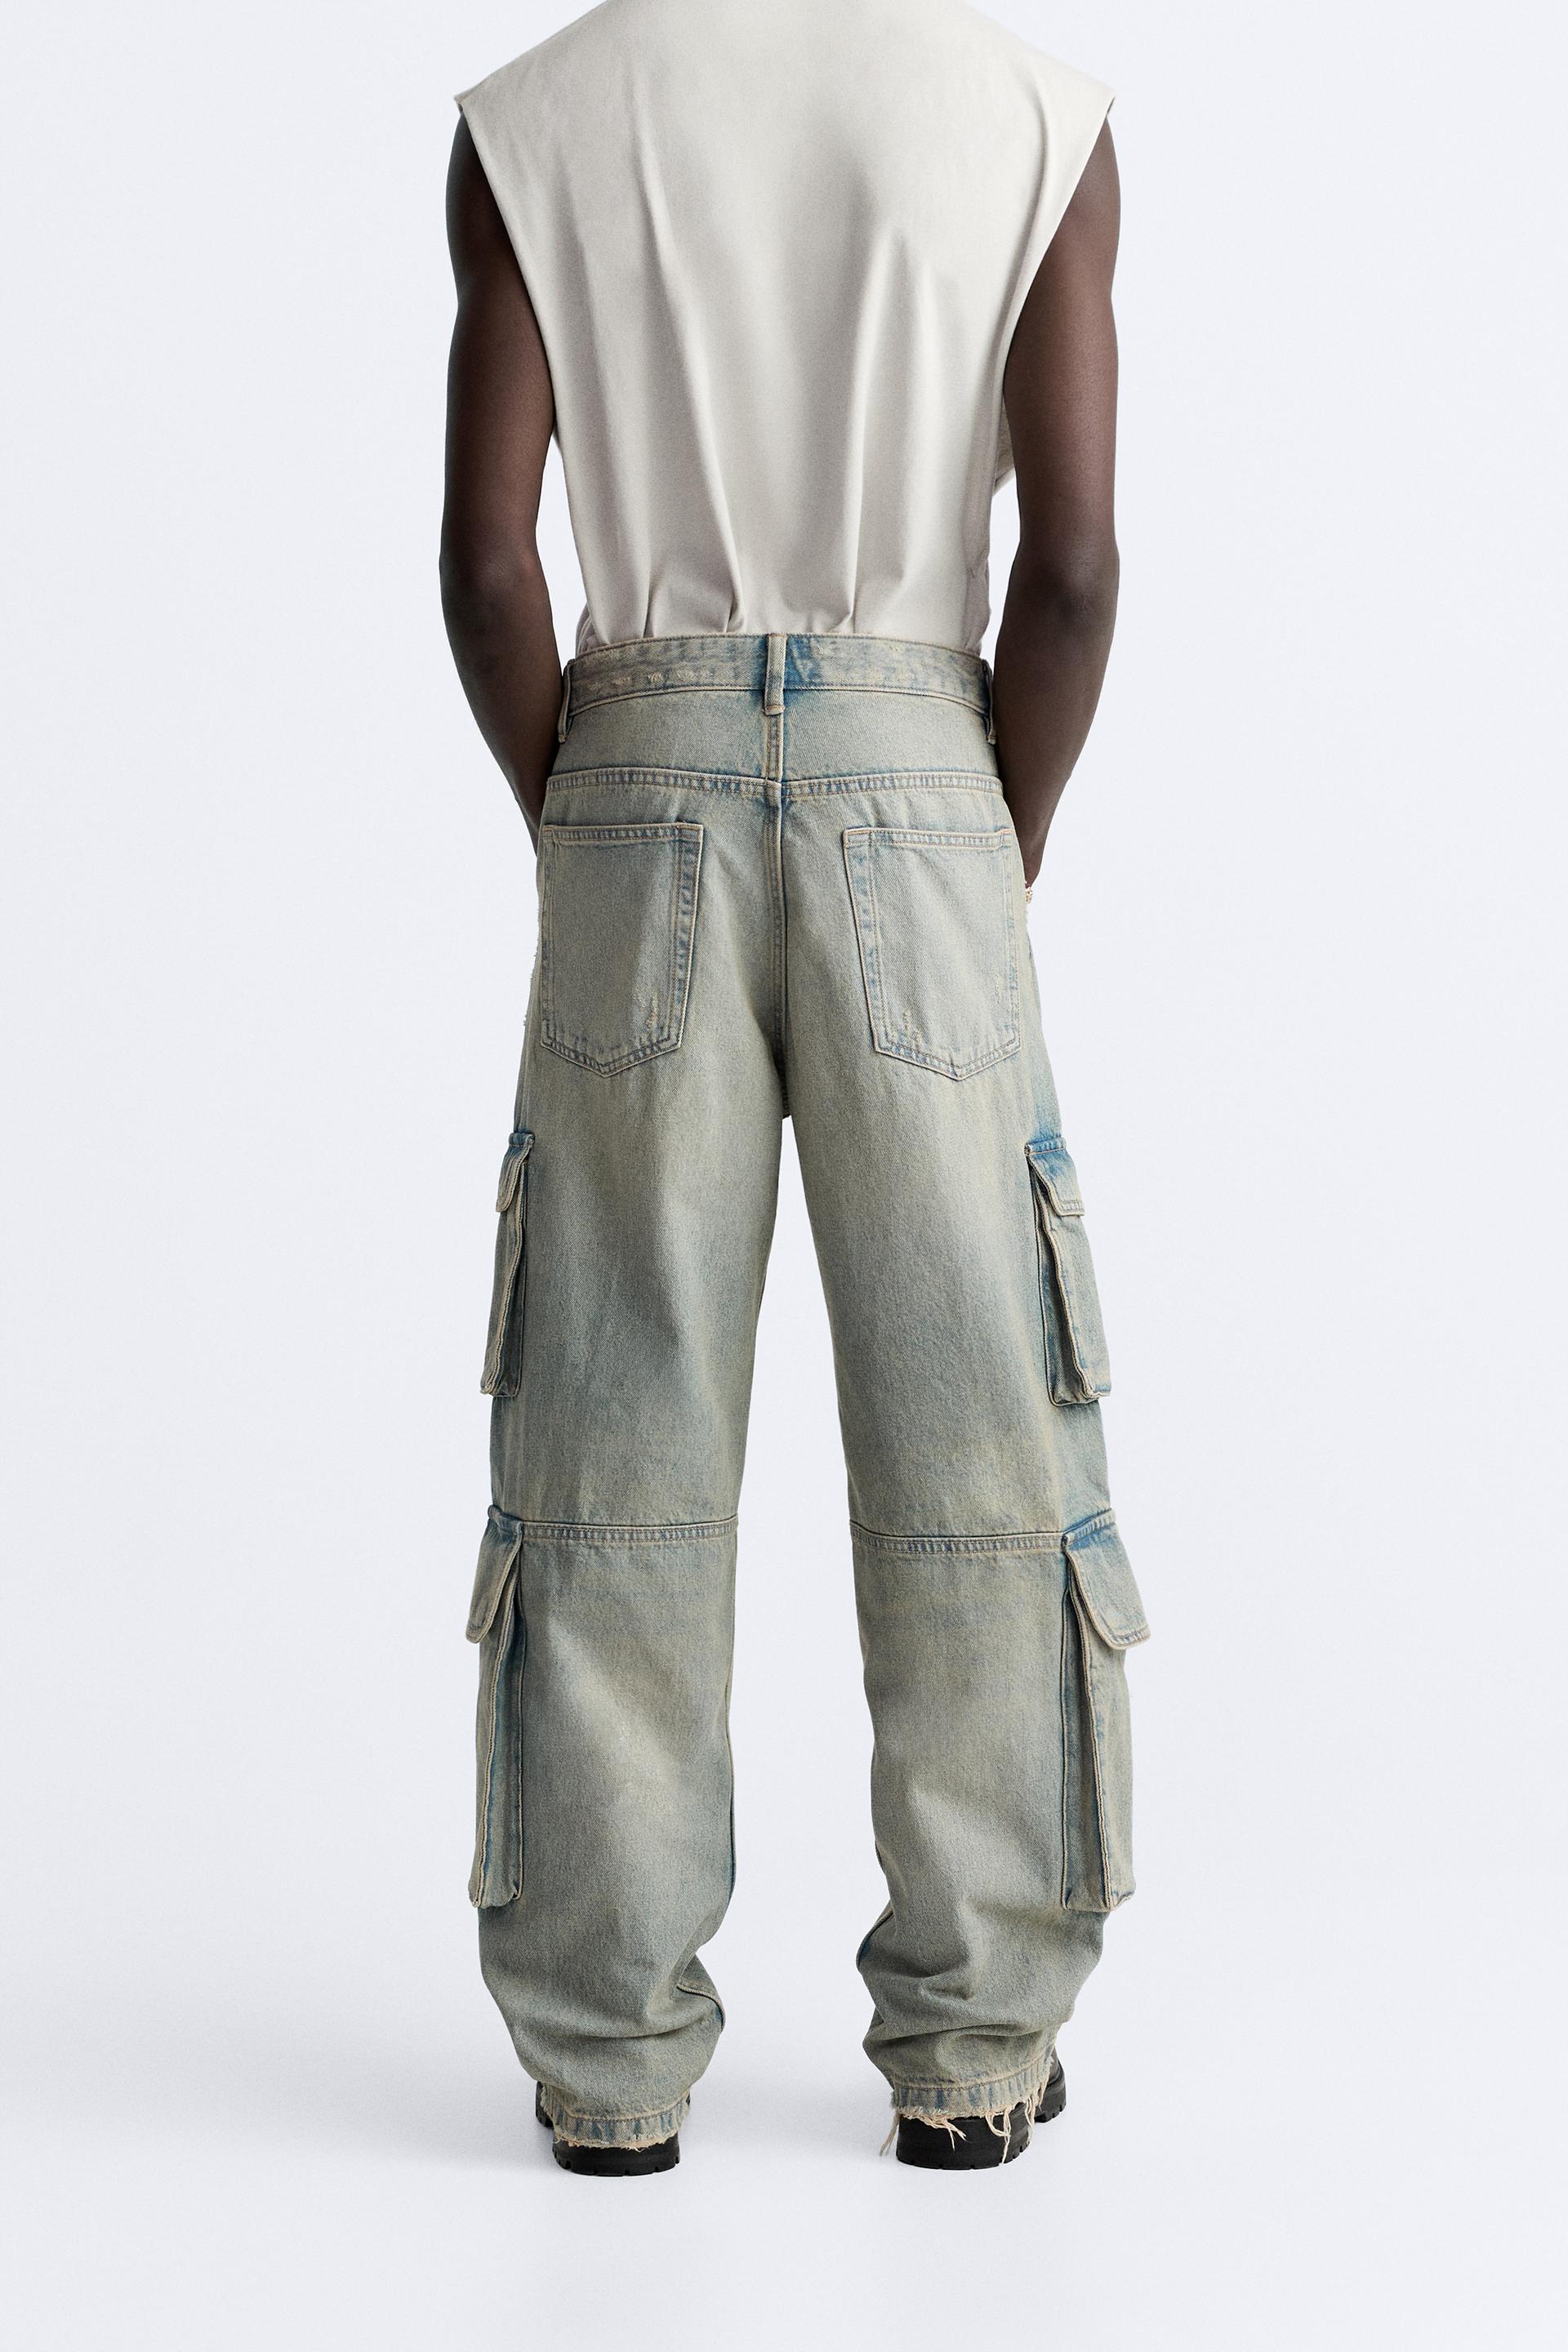 Zara, Jeans, 2 Zara Slim Stretch Utility Cargo Pants Xs